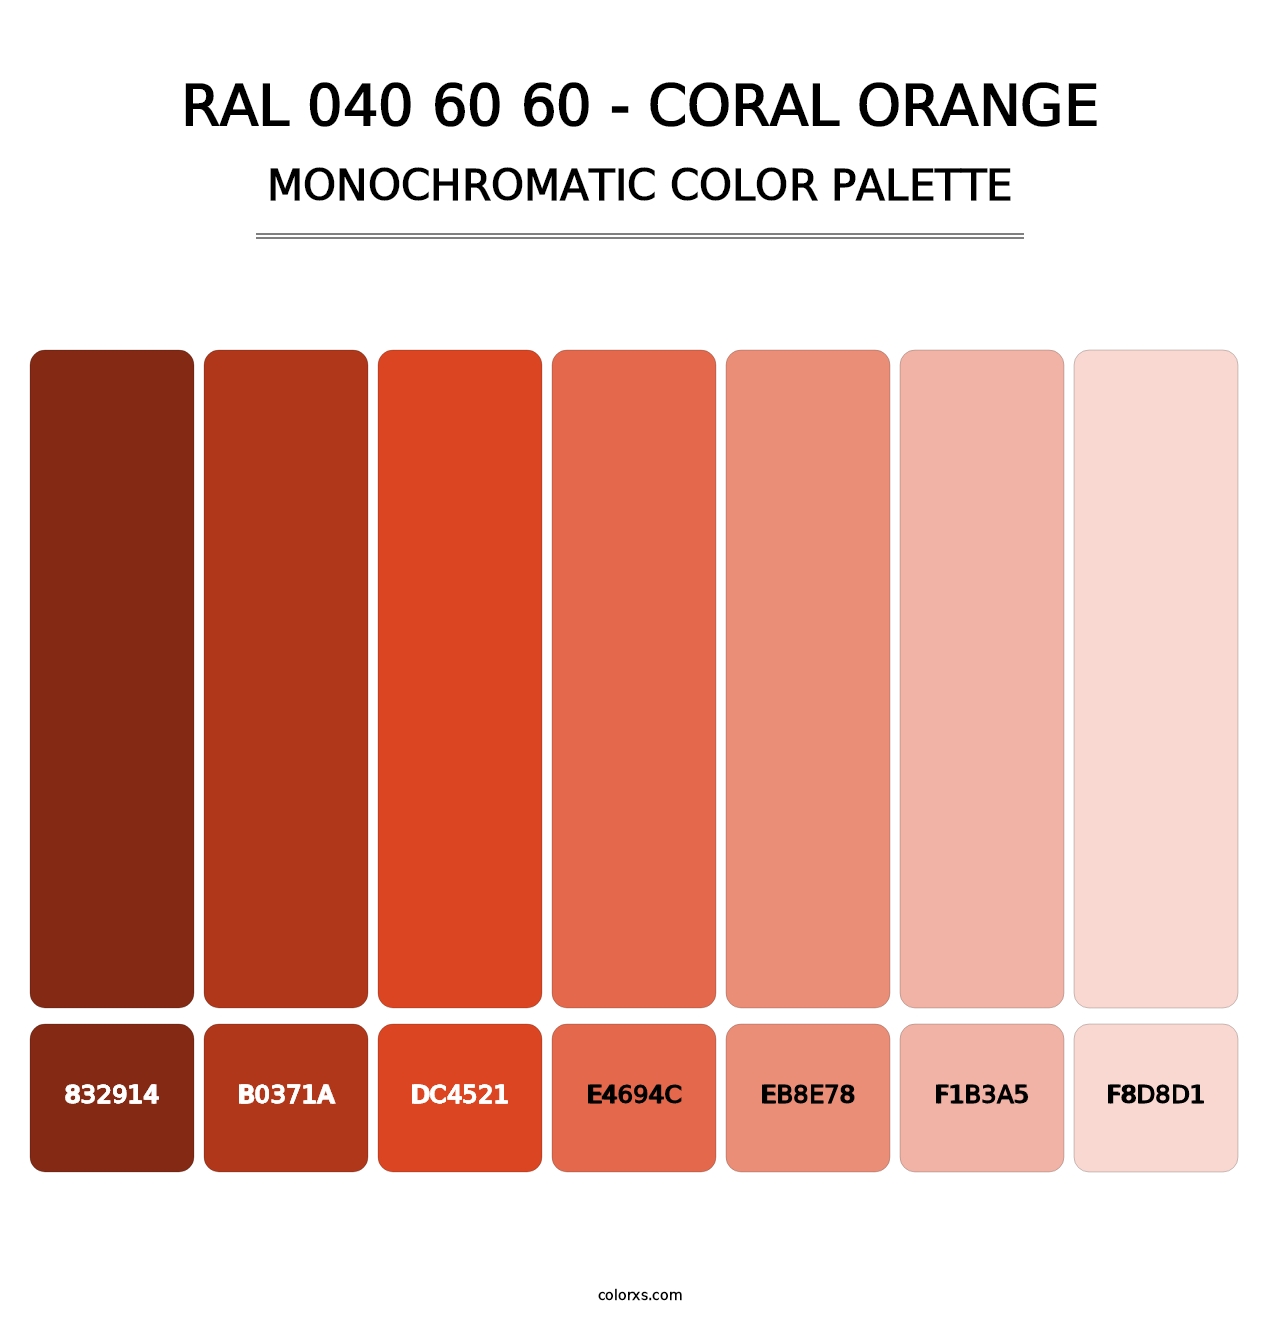 RAL 040 60 60 - Coral Orange - Monochromatic Color Palette